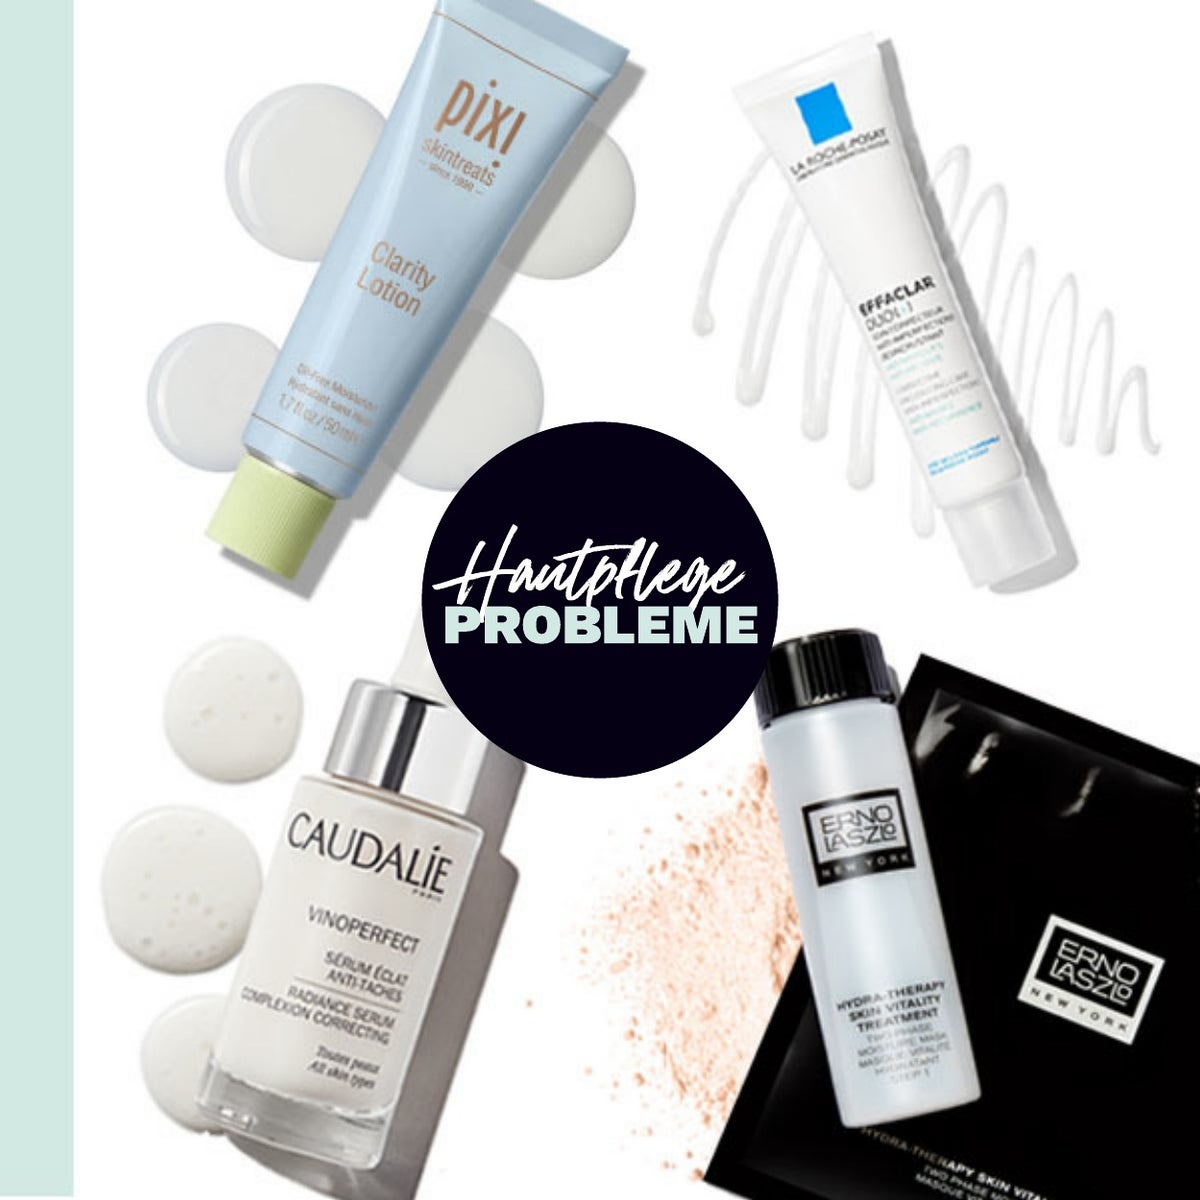 Shoppe nach Hautproblem, um die besten Hautpflegeprodukte für deine Haut zu erhalten!